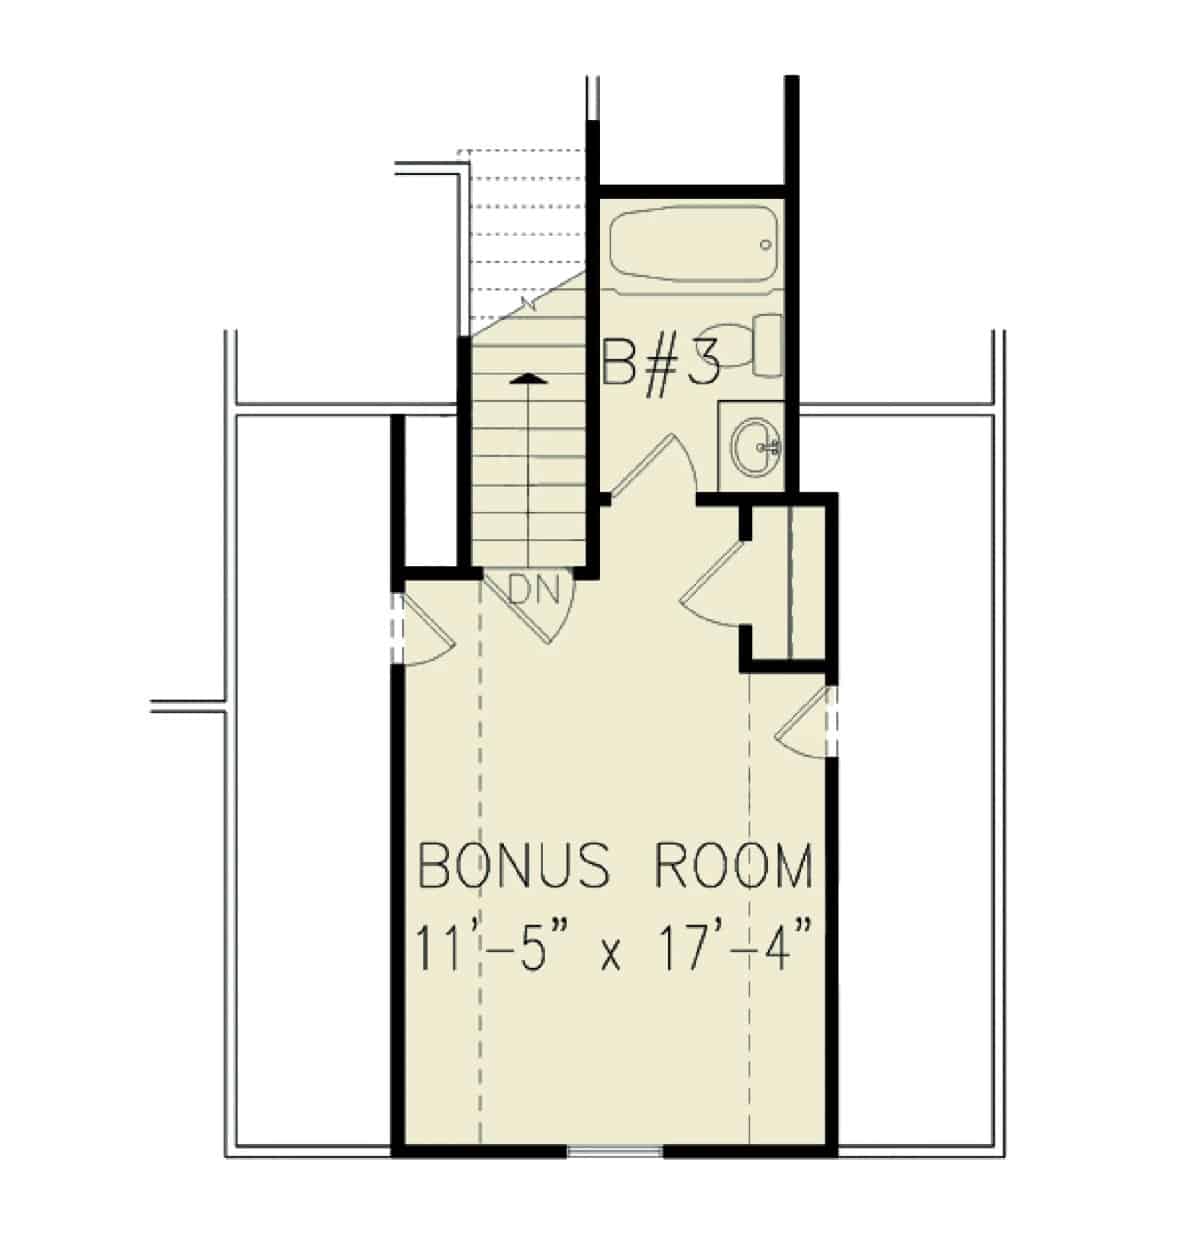 二层平面图，设有一个奖励房间，配有完整的浴室和衣柜。